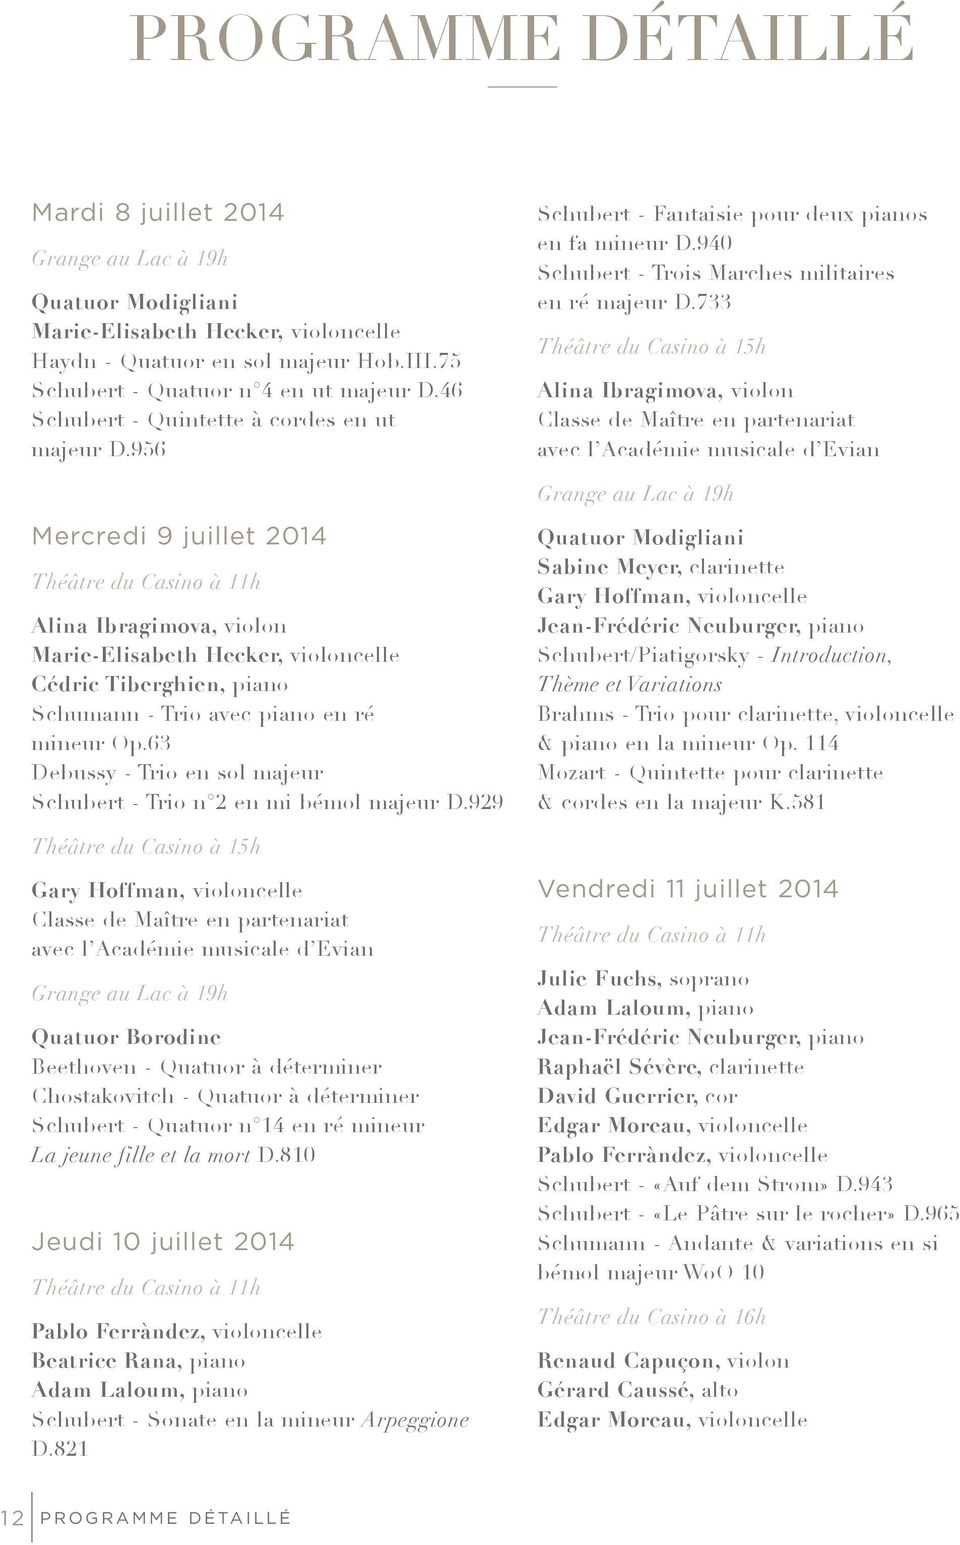 956 Mercredi 9 juillet 2014 Théâtre du Casino à 11h Alina Ibragimova, violon Marie-Elisabeth Hecker, violoncelle Cédric Tiberghien, piano Schumann - Trio avec piano en ré mineur Op.